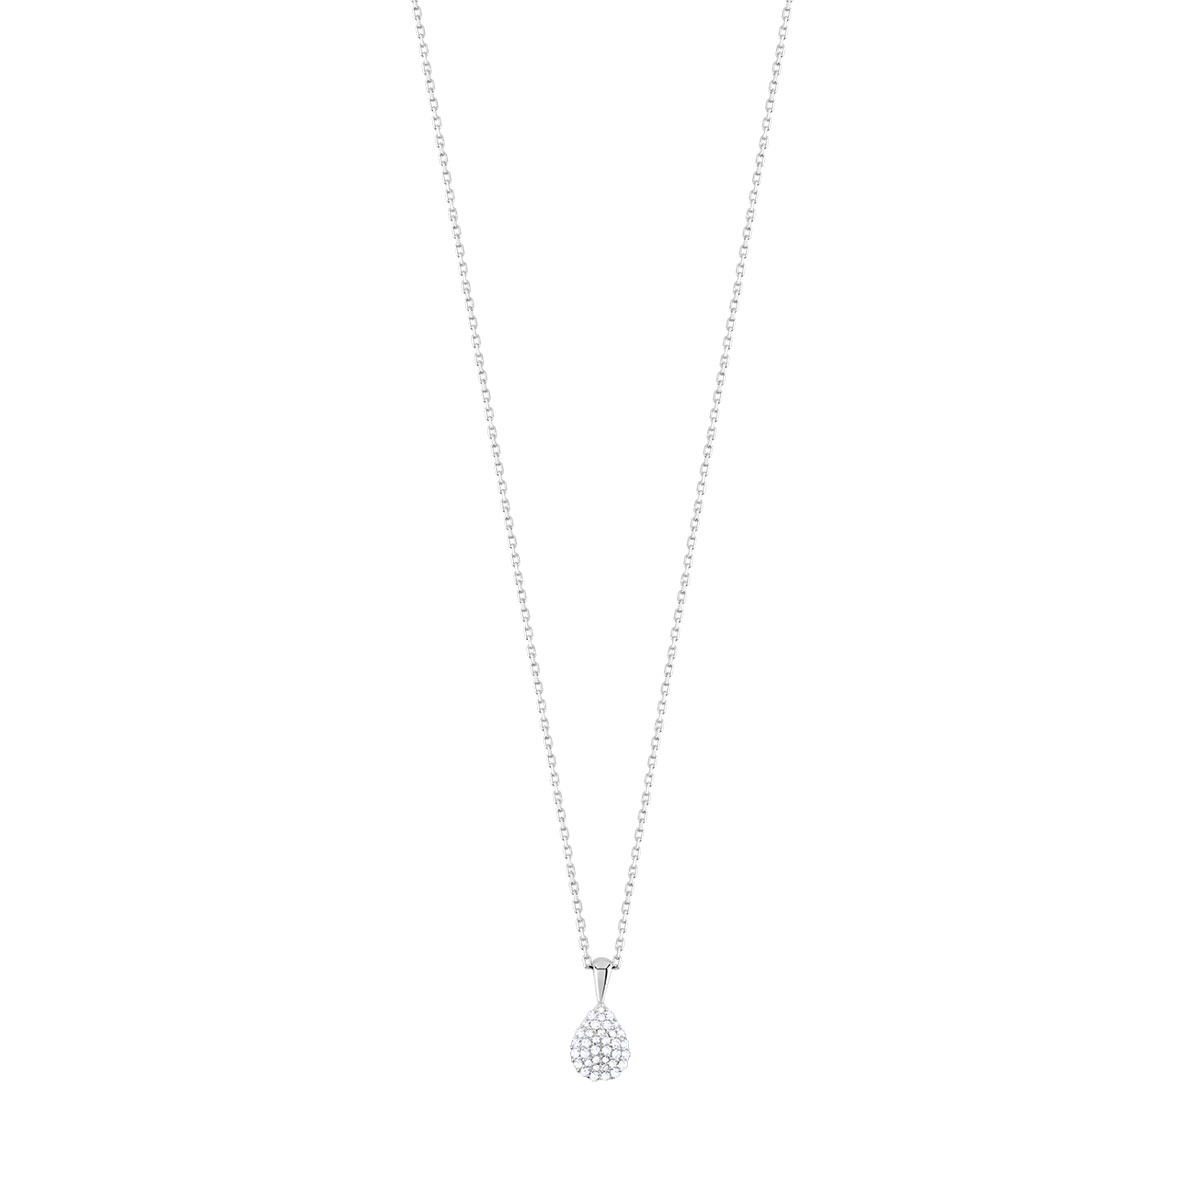 Collier or 375 blanc goutte diamants 42 cm